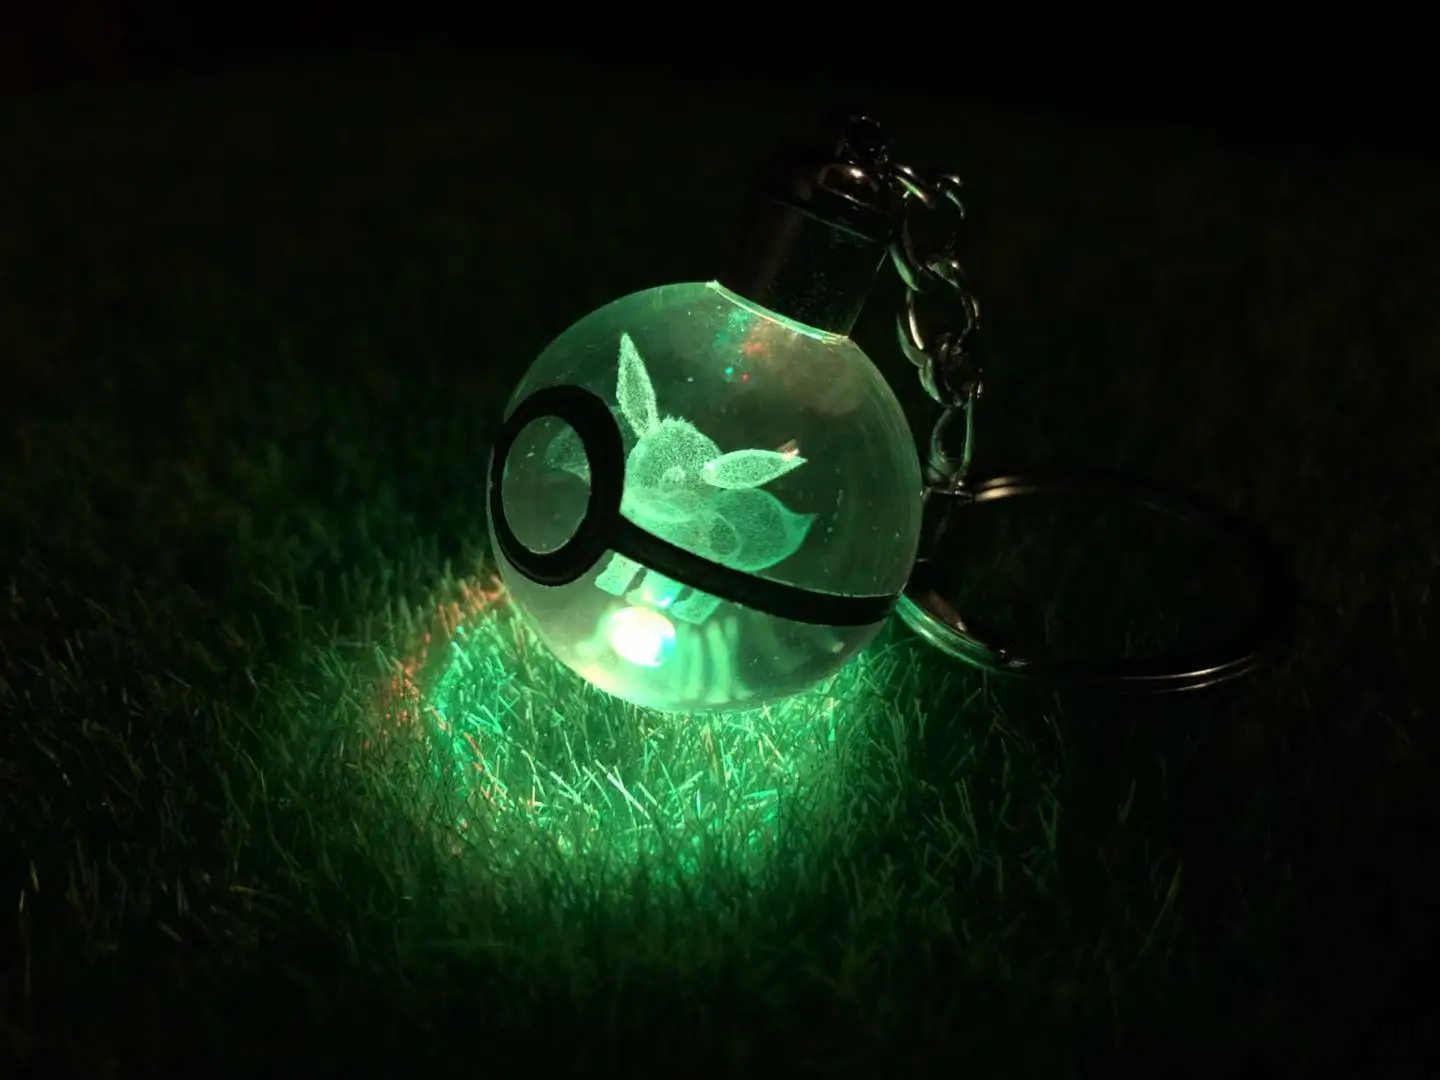 Модные Bulbasaur Стрекоза 3D стекло с гравировкой шар лампа Покемон го новинка брелок для ключей с led-лампочкой Красочный кулон детский подарок - Цвет: Eevee